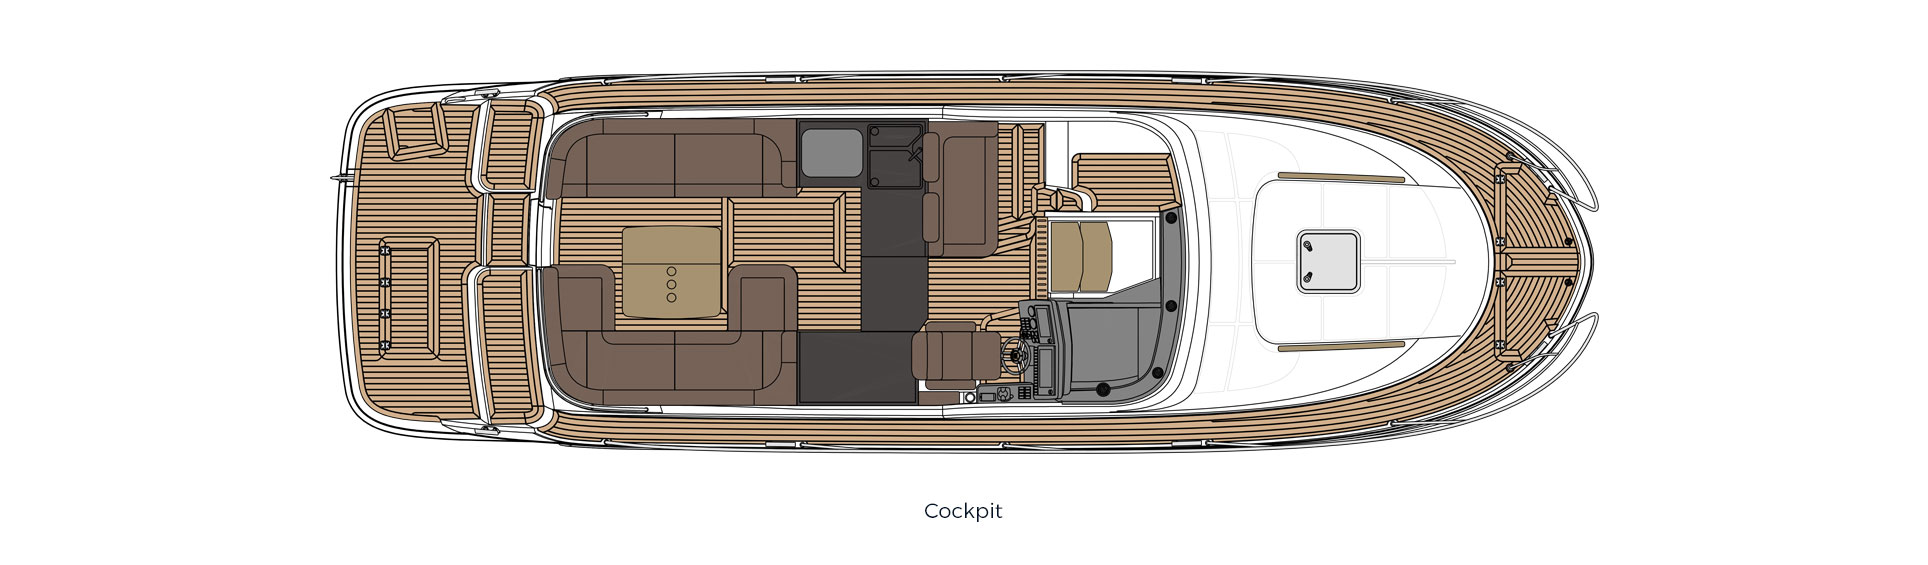 360cc long decklayout cockpit